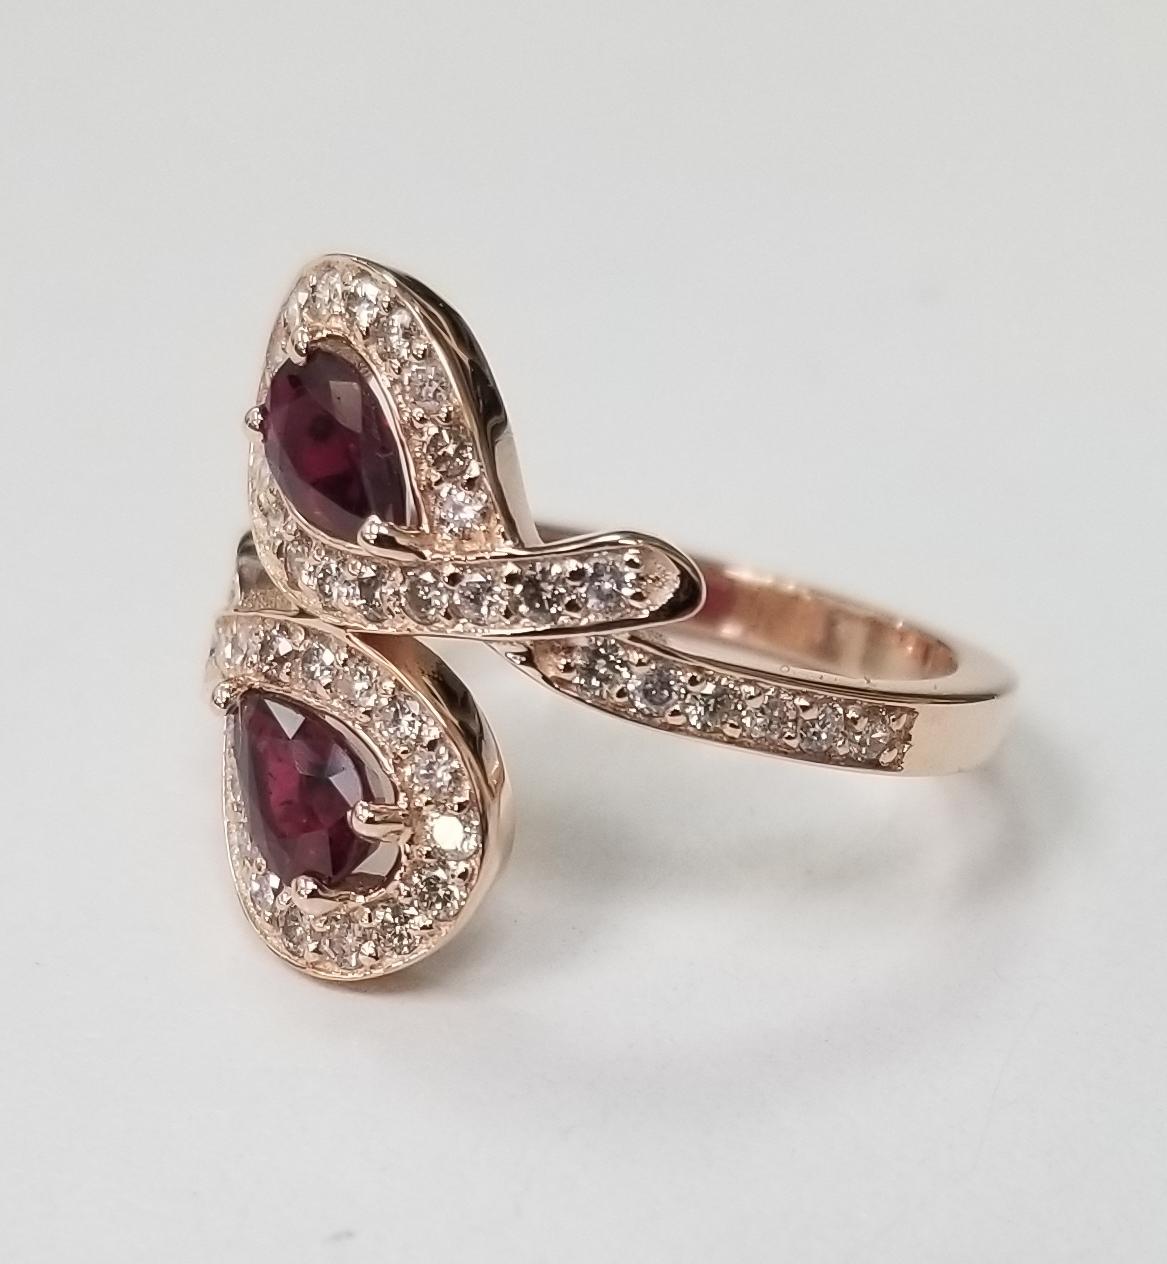 Rubin- und Diamantring aus 14 Karat Roségold, mit 2 birnenförmigen Rubinen in Edelsteinqualität mit einem Gewicht von 0,90 Pence und 48 runden Diamanten im Vollschliff von sehr guter Qualität mit einem Gewicht von 0,55 Pence.  Dieser Ring ist eine